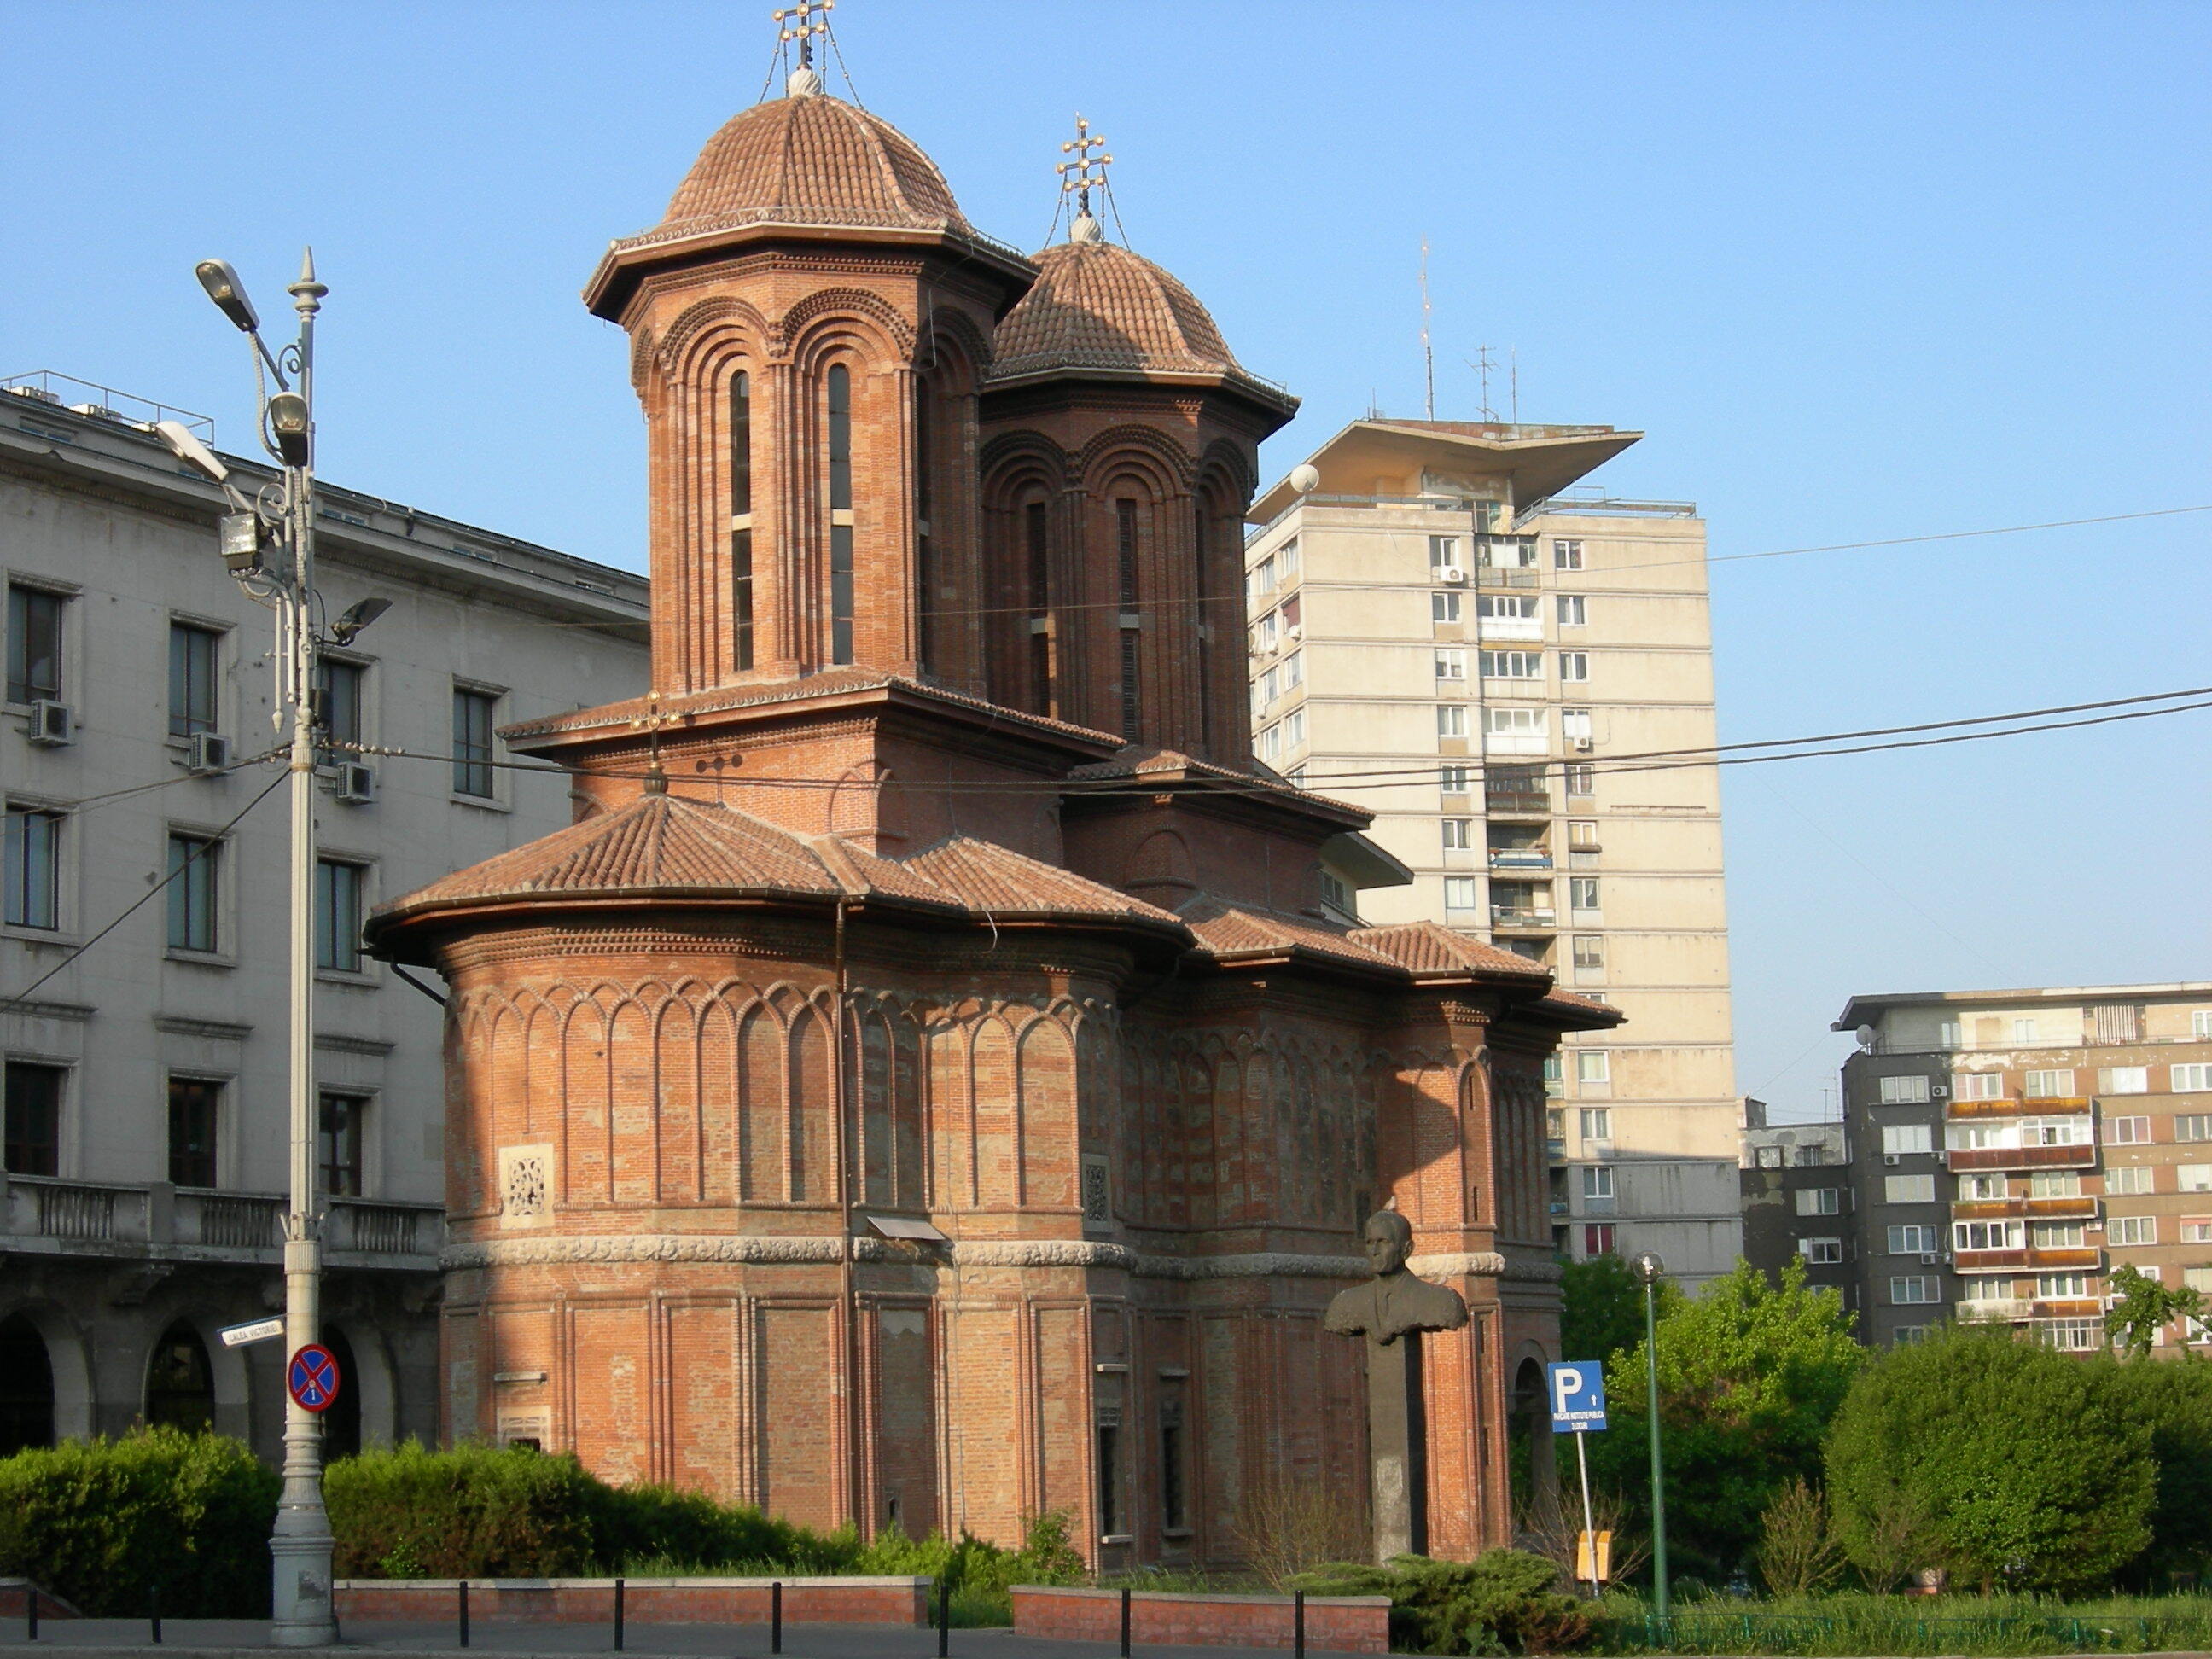 Creţulescu Church (also sometimes spelled Kretsulescu), Calea Victoriei, Bucharest, Romania